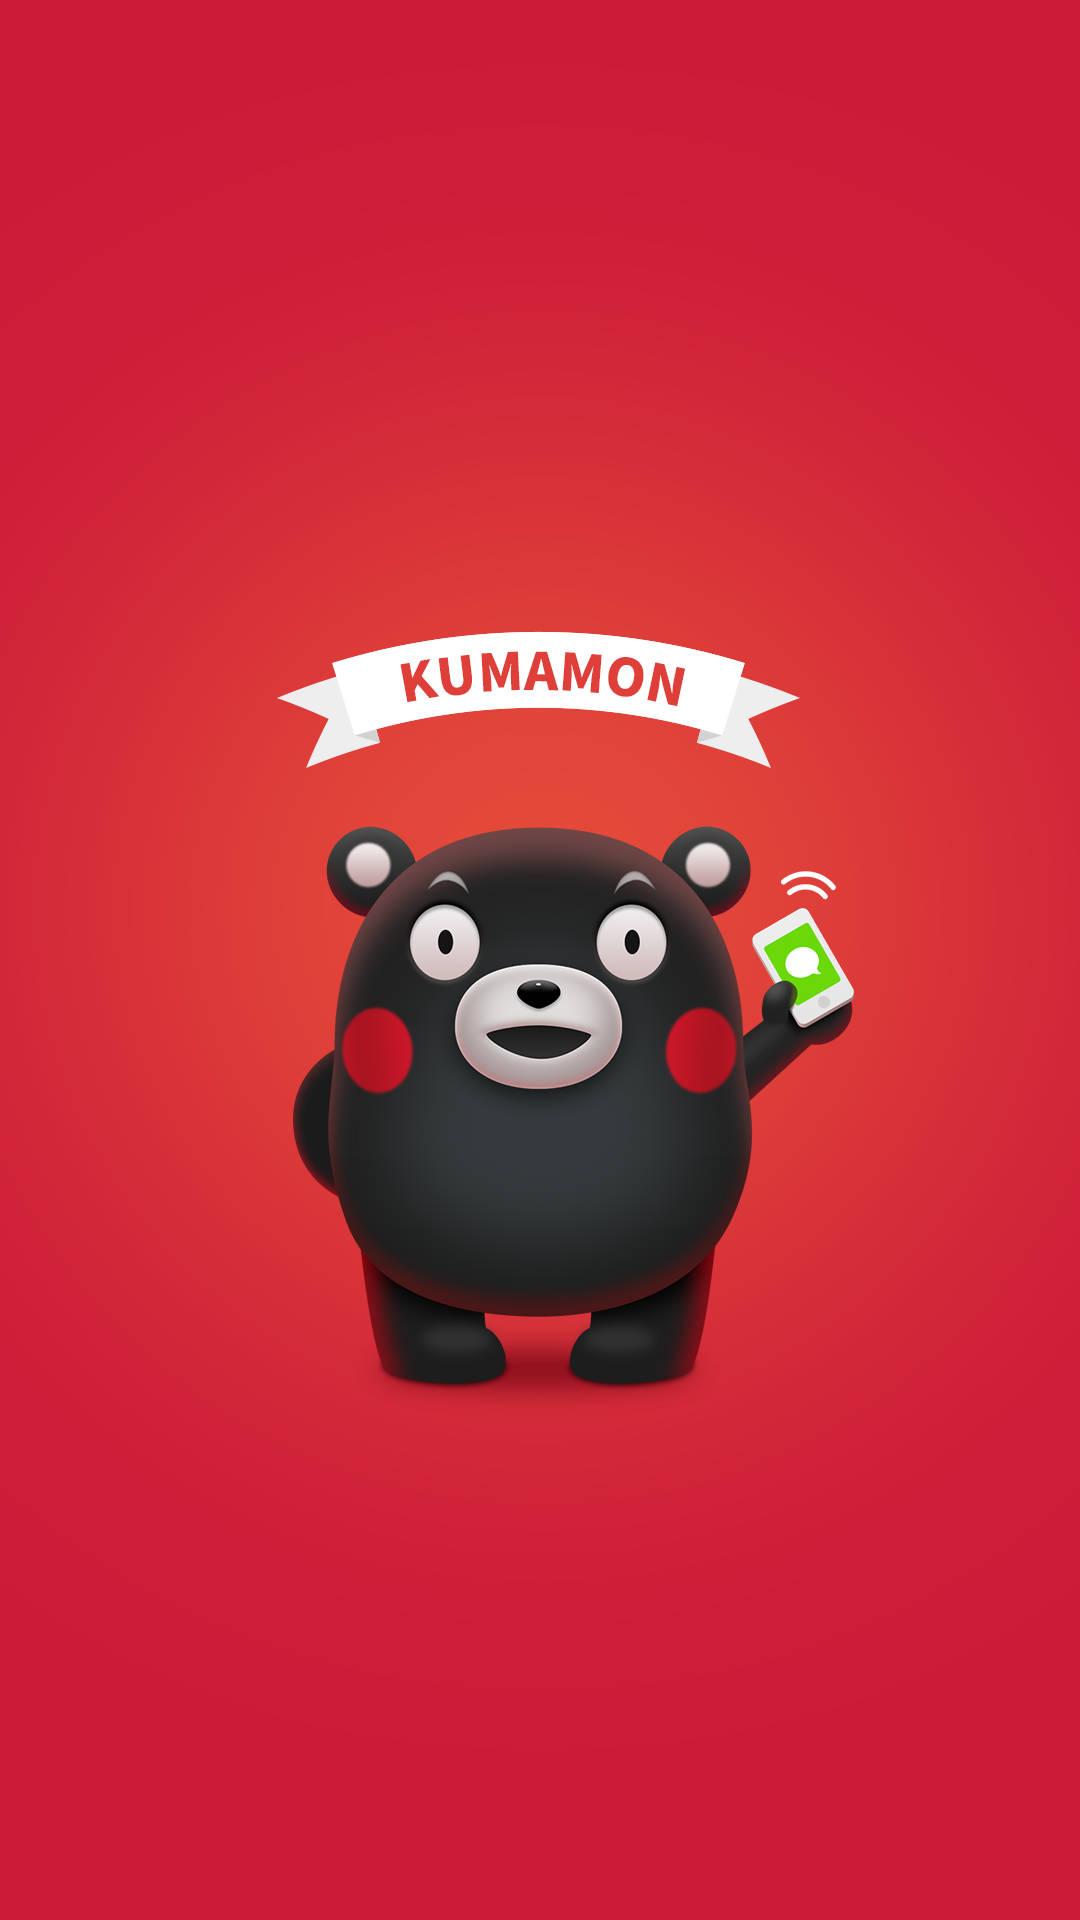 3d Kumamon On Red